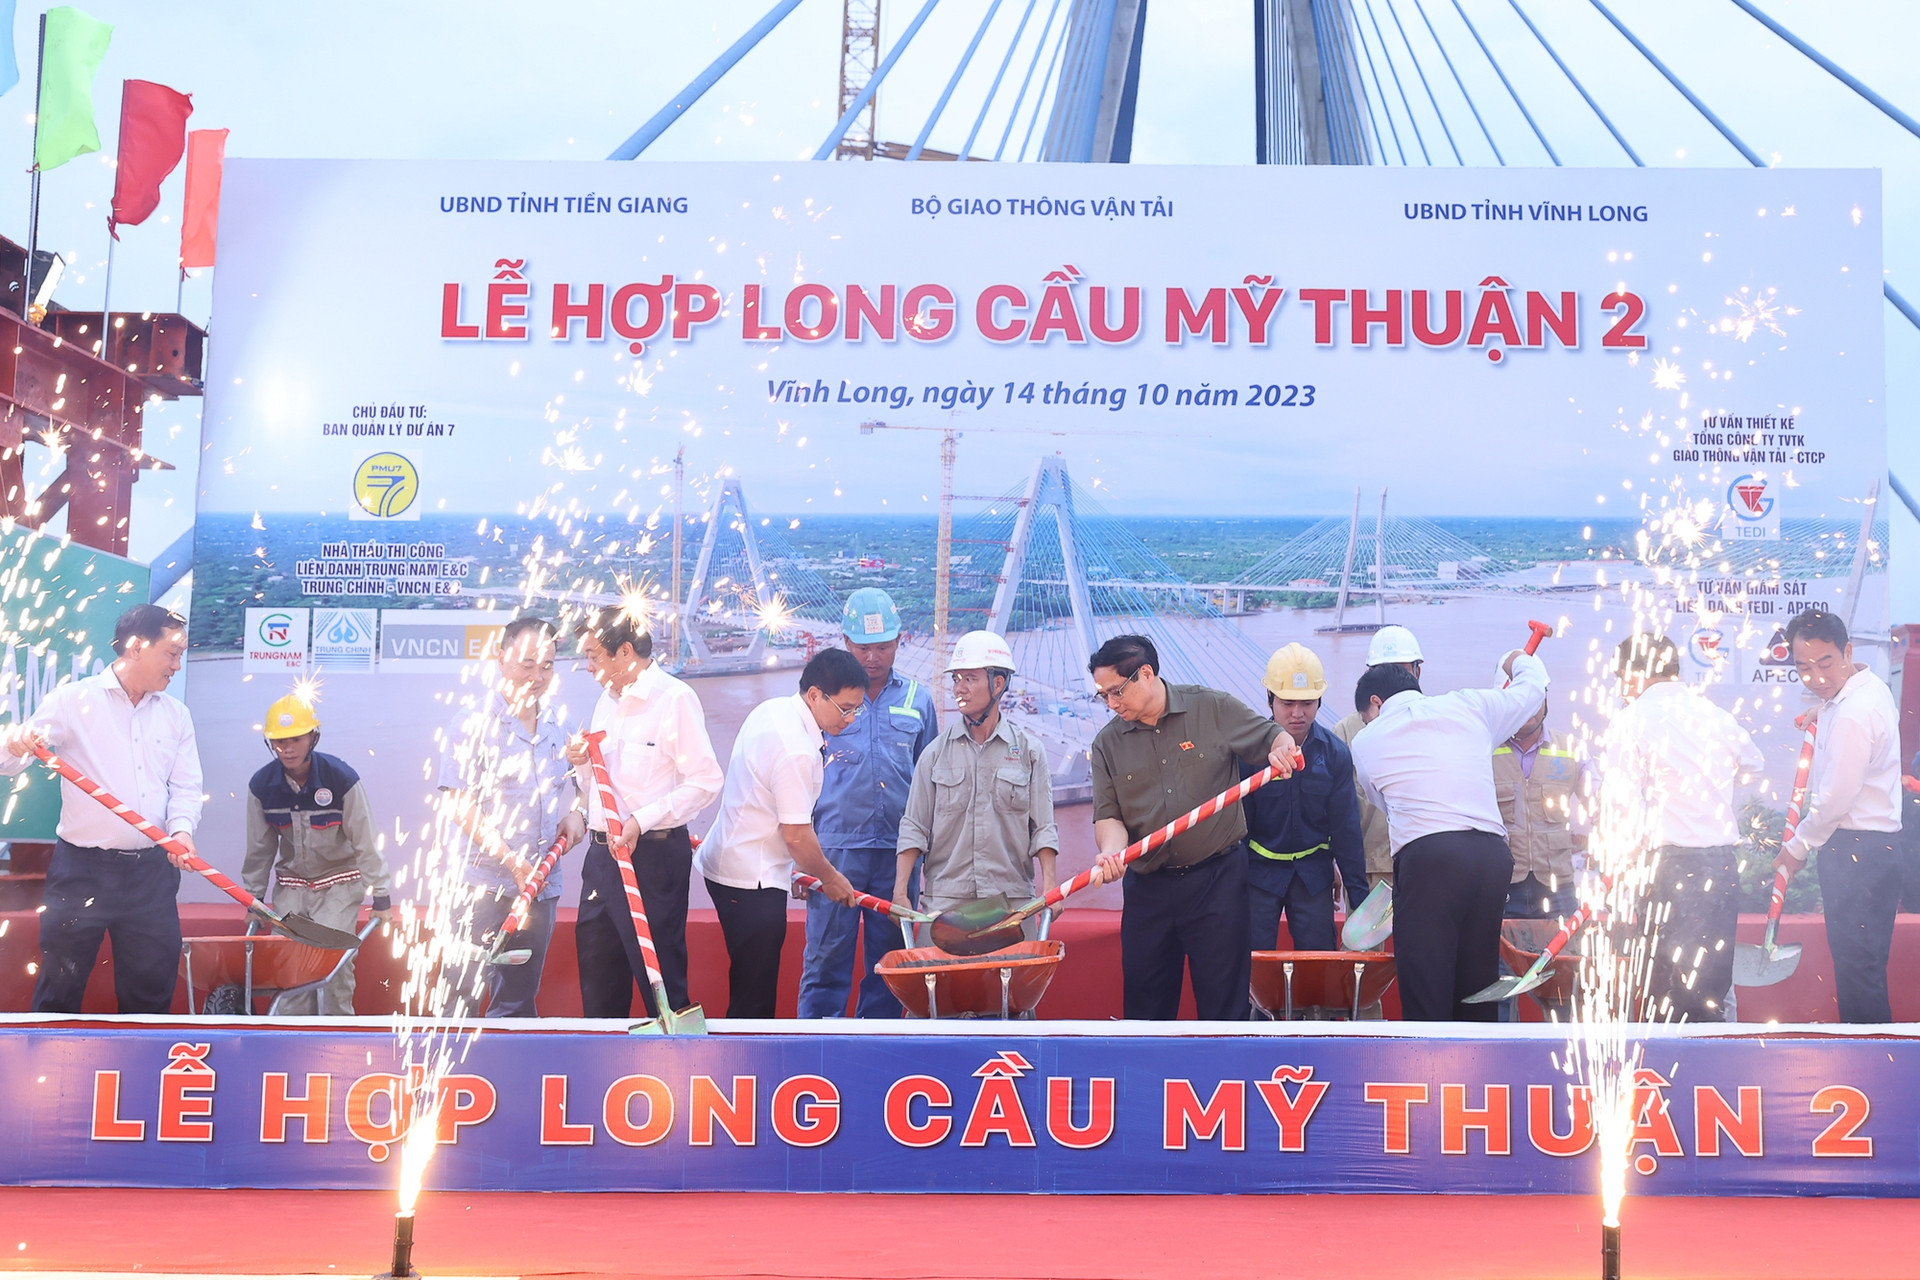 Hợp long cầu Mỹ Thuận 2 - cây cầu cấp đặc biệt, trọng điểm quốc gia mang thương hiệu Việt - Ảnh 1.